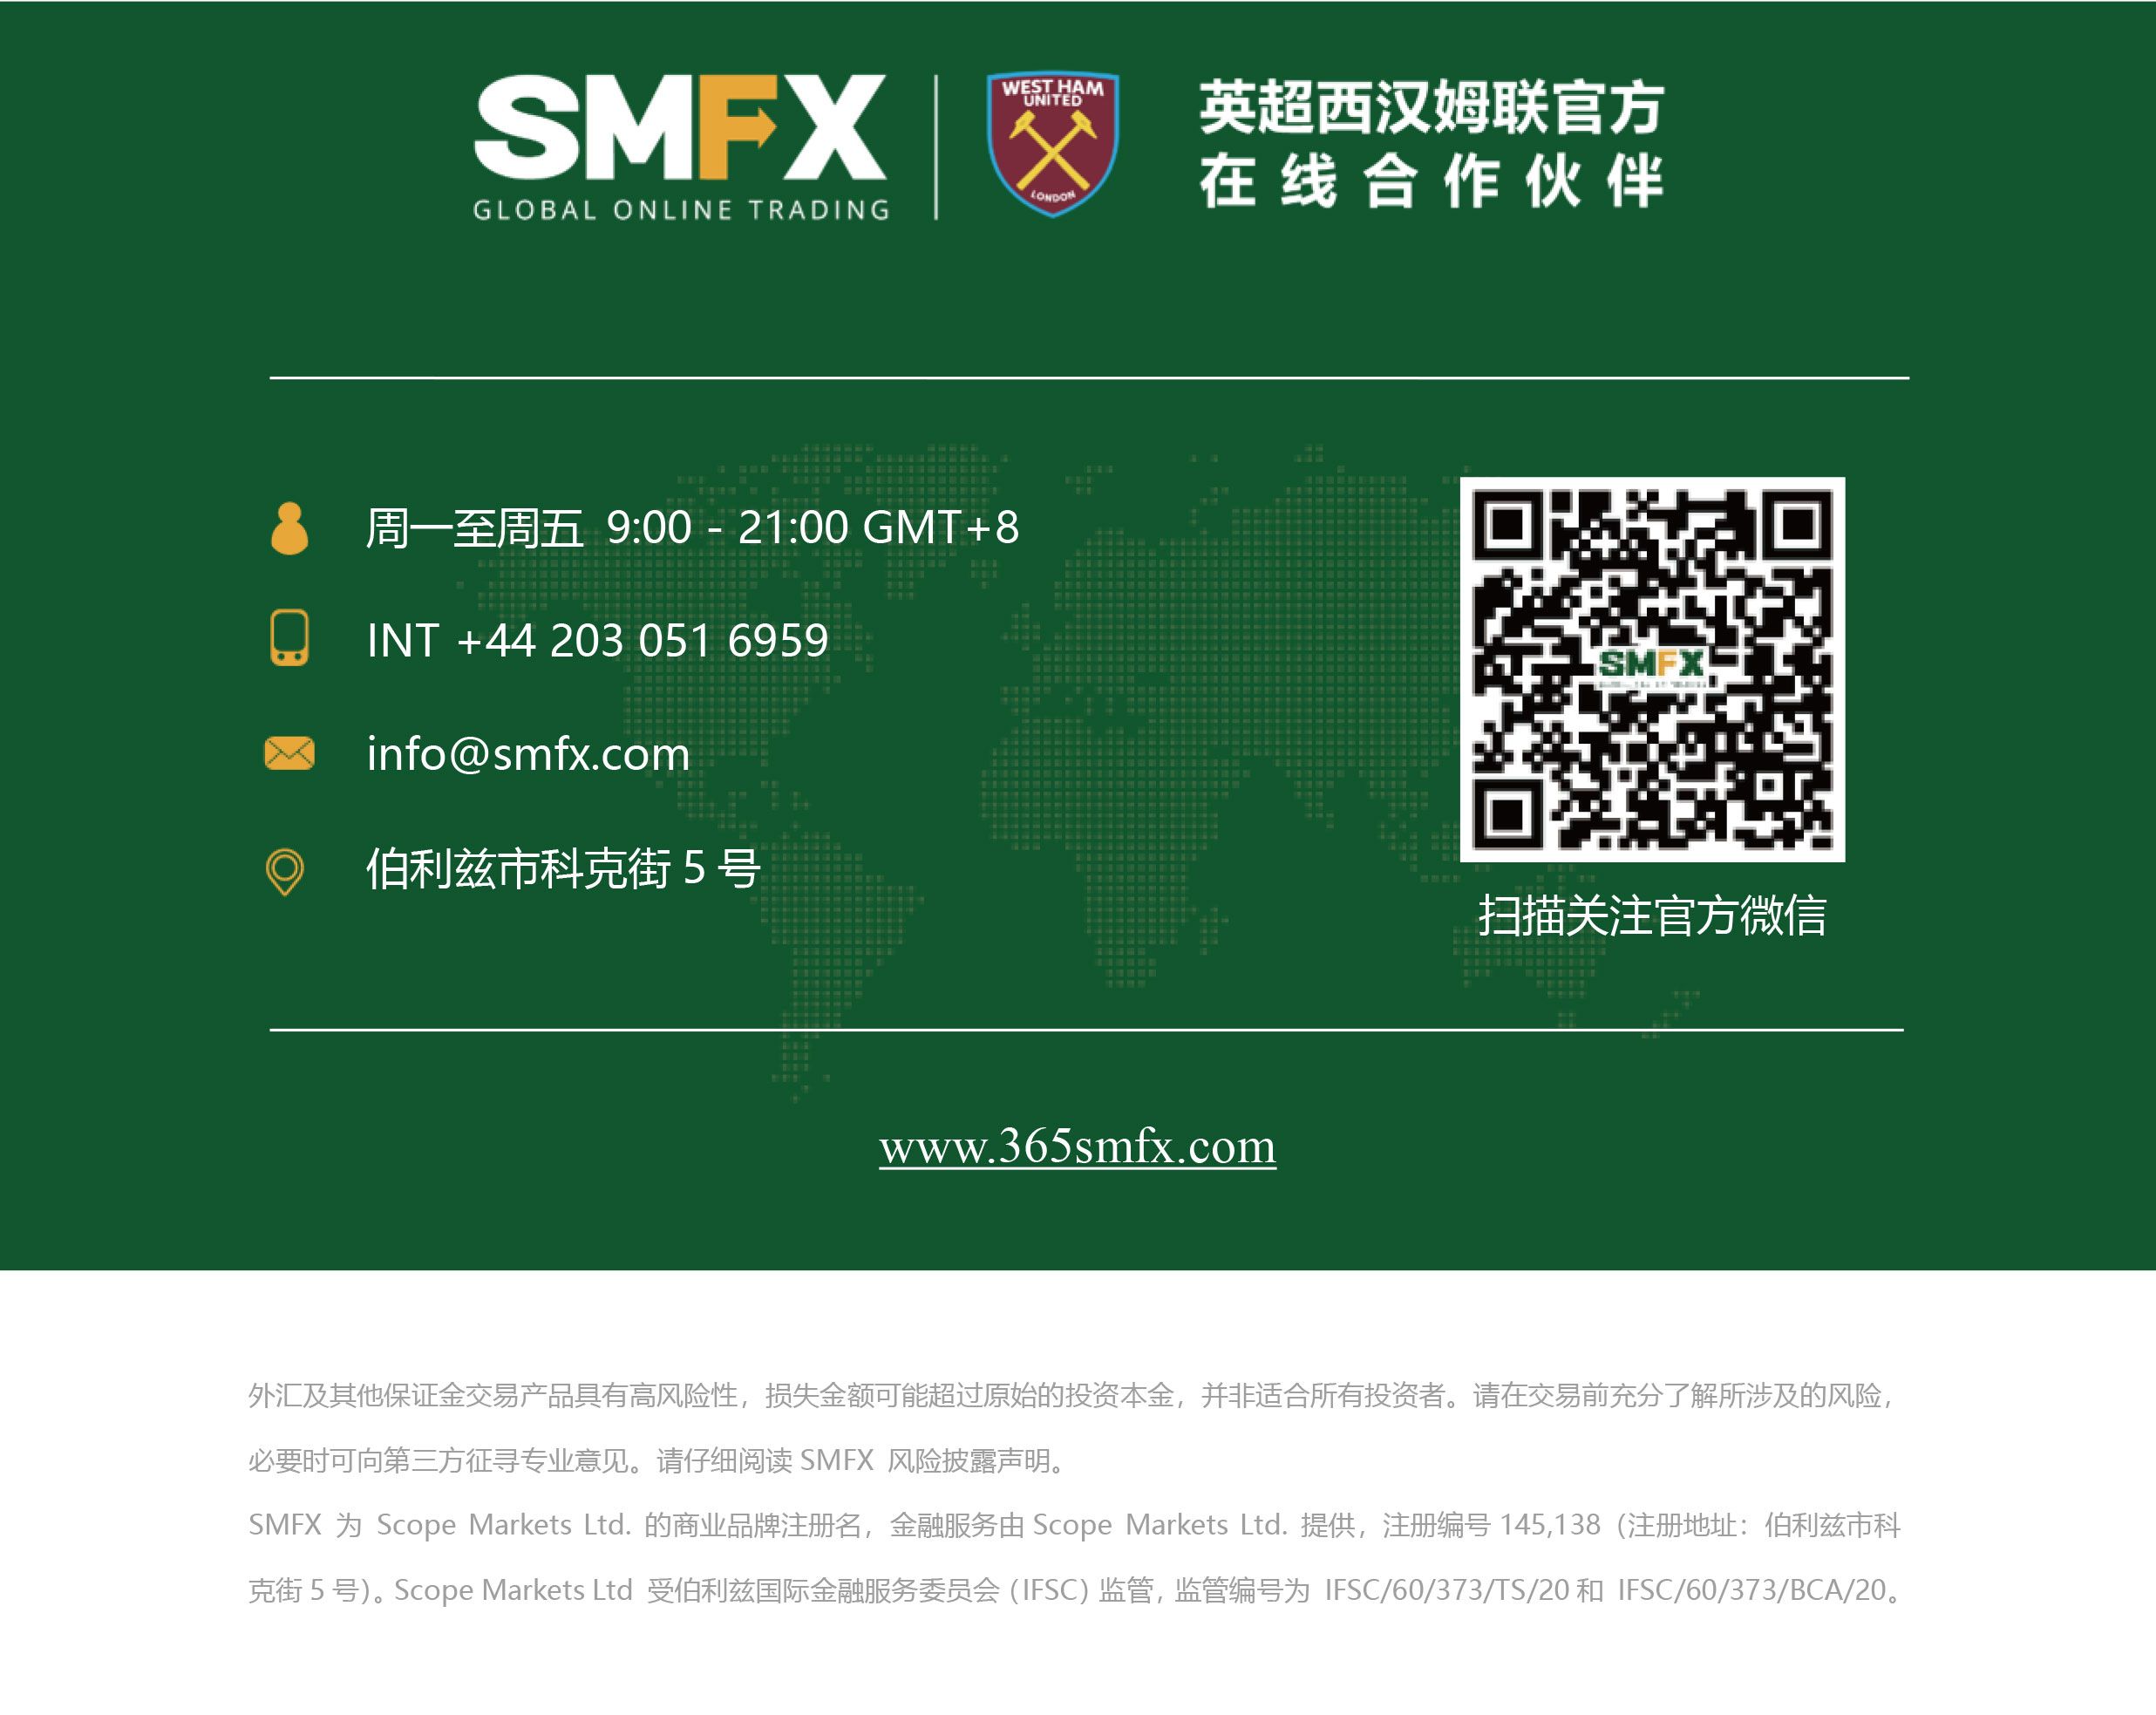 SMFX【市场晚评】2020.09.30丨总统辩论闹剧收场 金油汇股承压下行